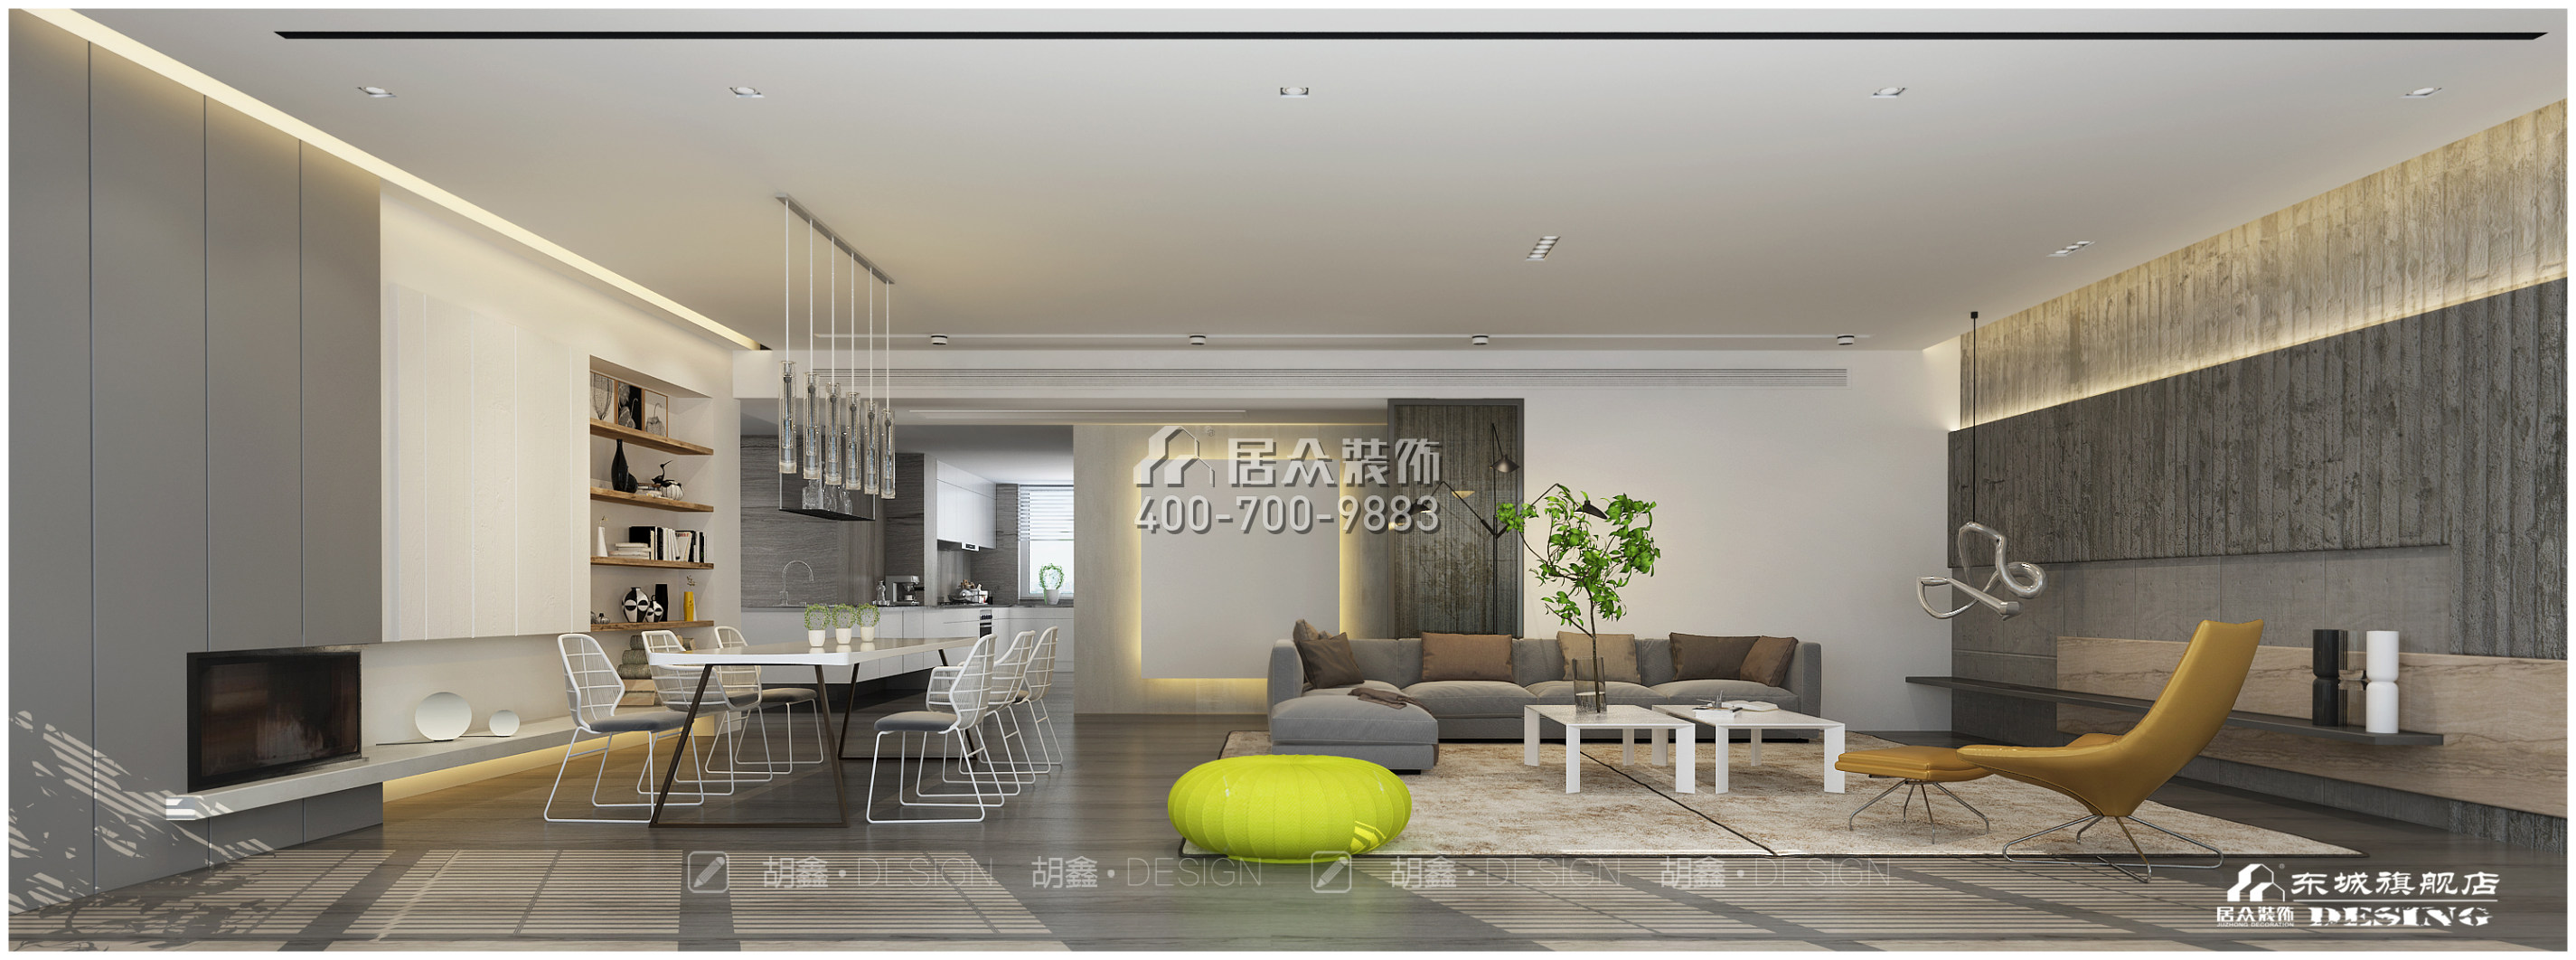 保利国际广场320平方米现代简约风格平层户型客厅装修效果图